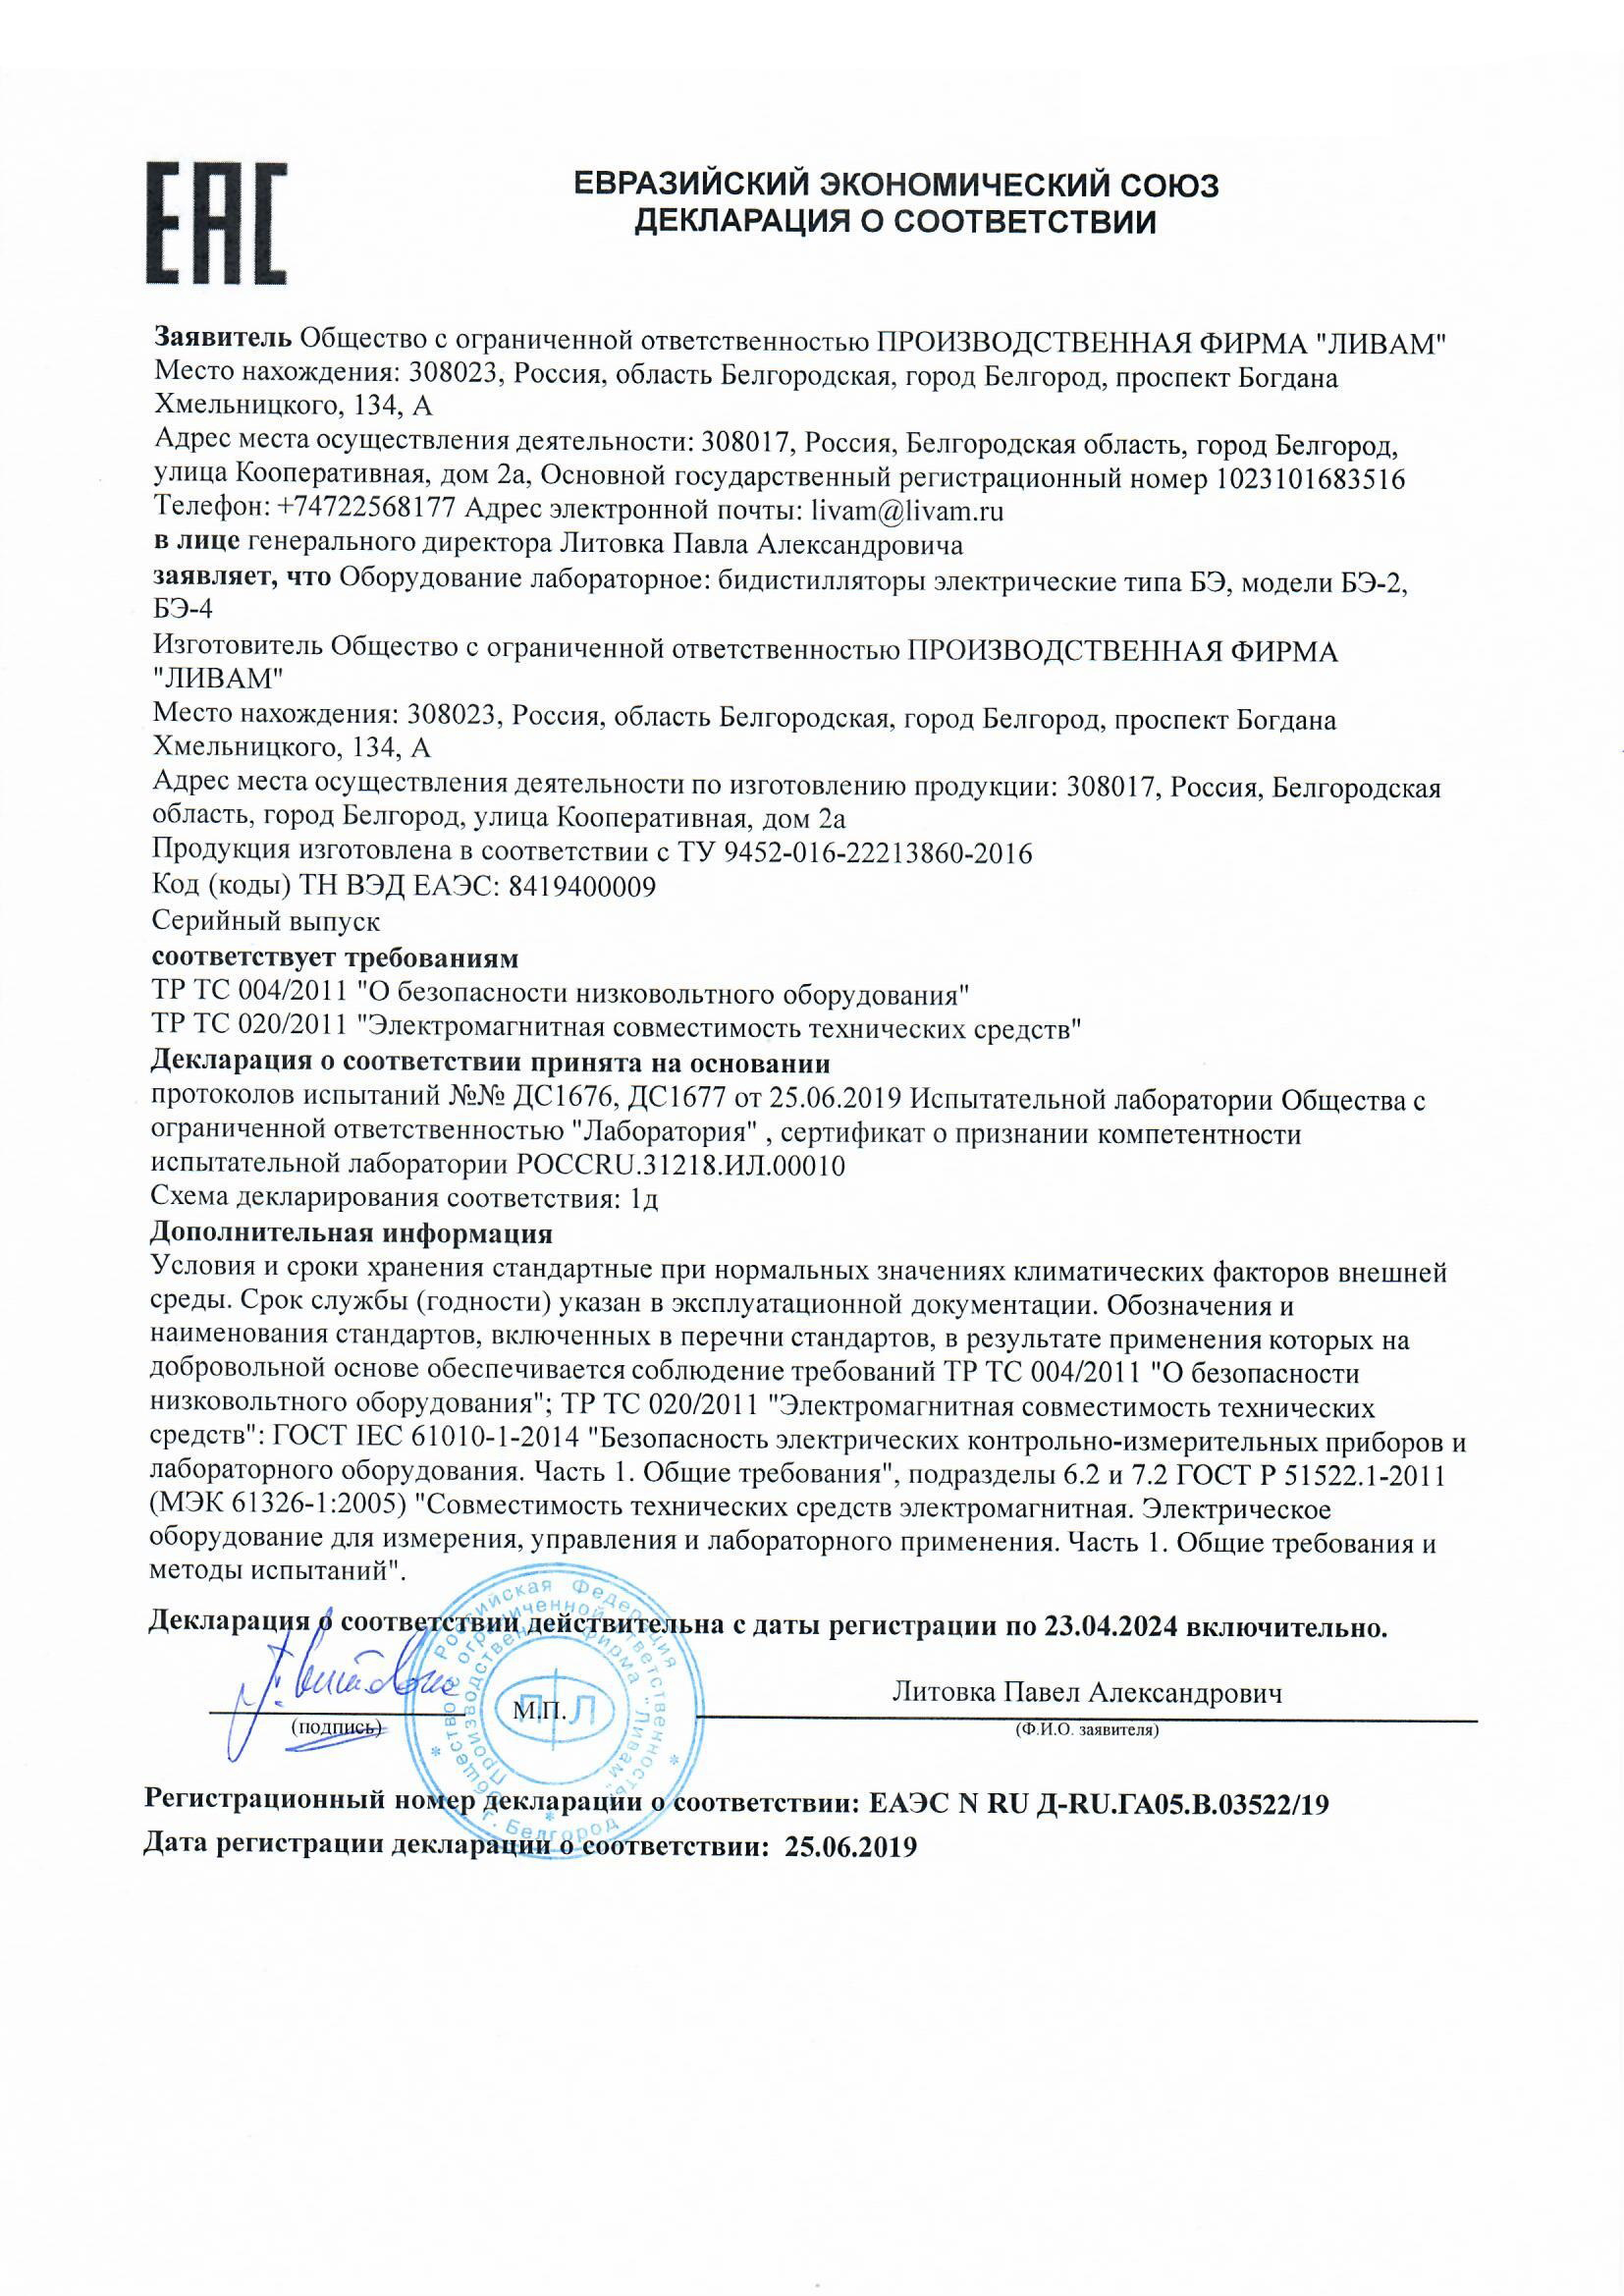 Декларация о соответствии бидистилляторов БЭ-2, БЭ-4 ТР ТС 020-2011 Электромагнитная совместимость